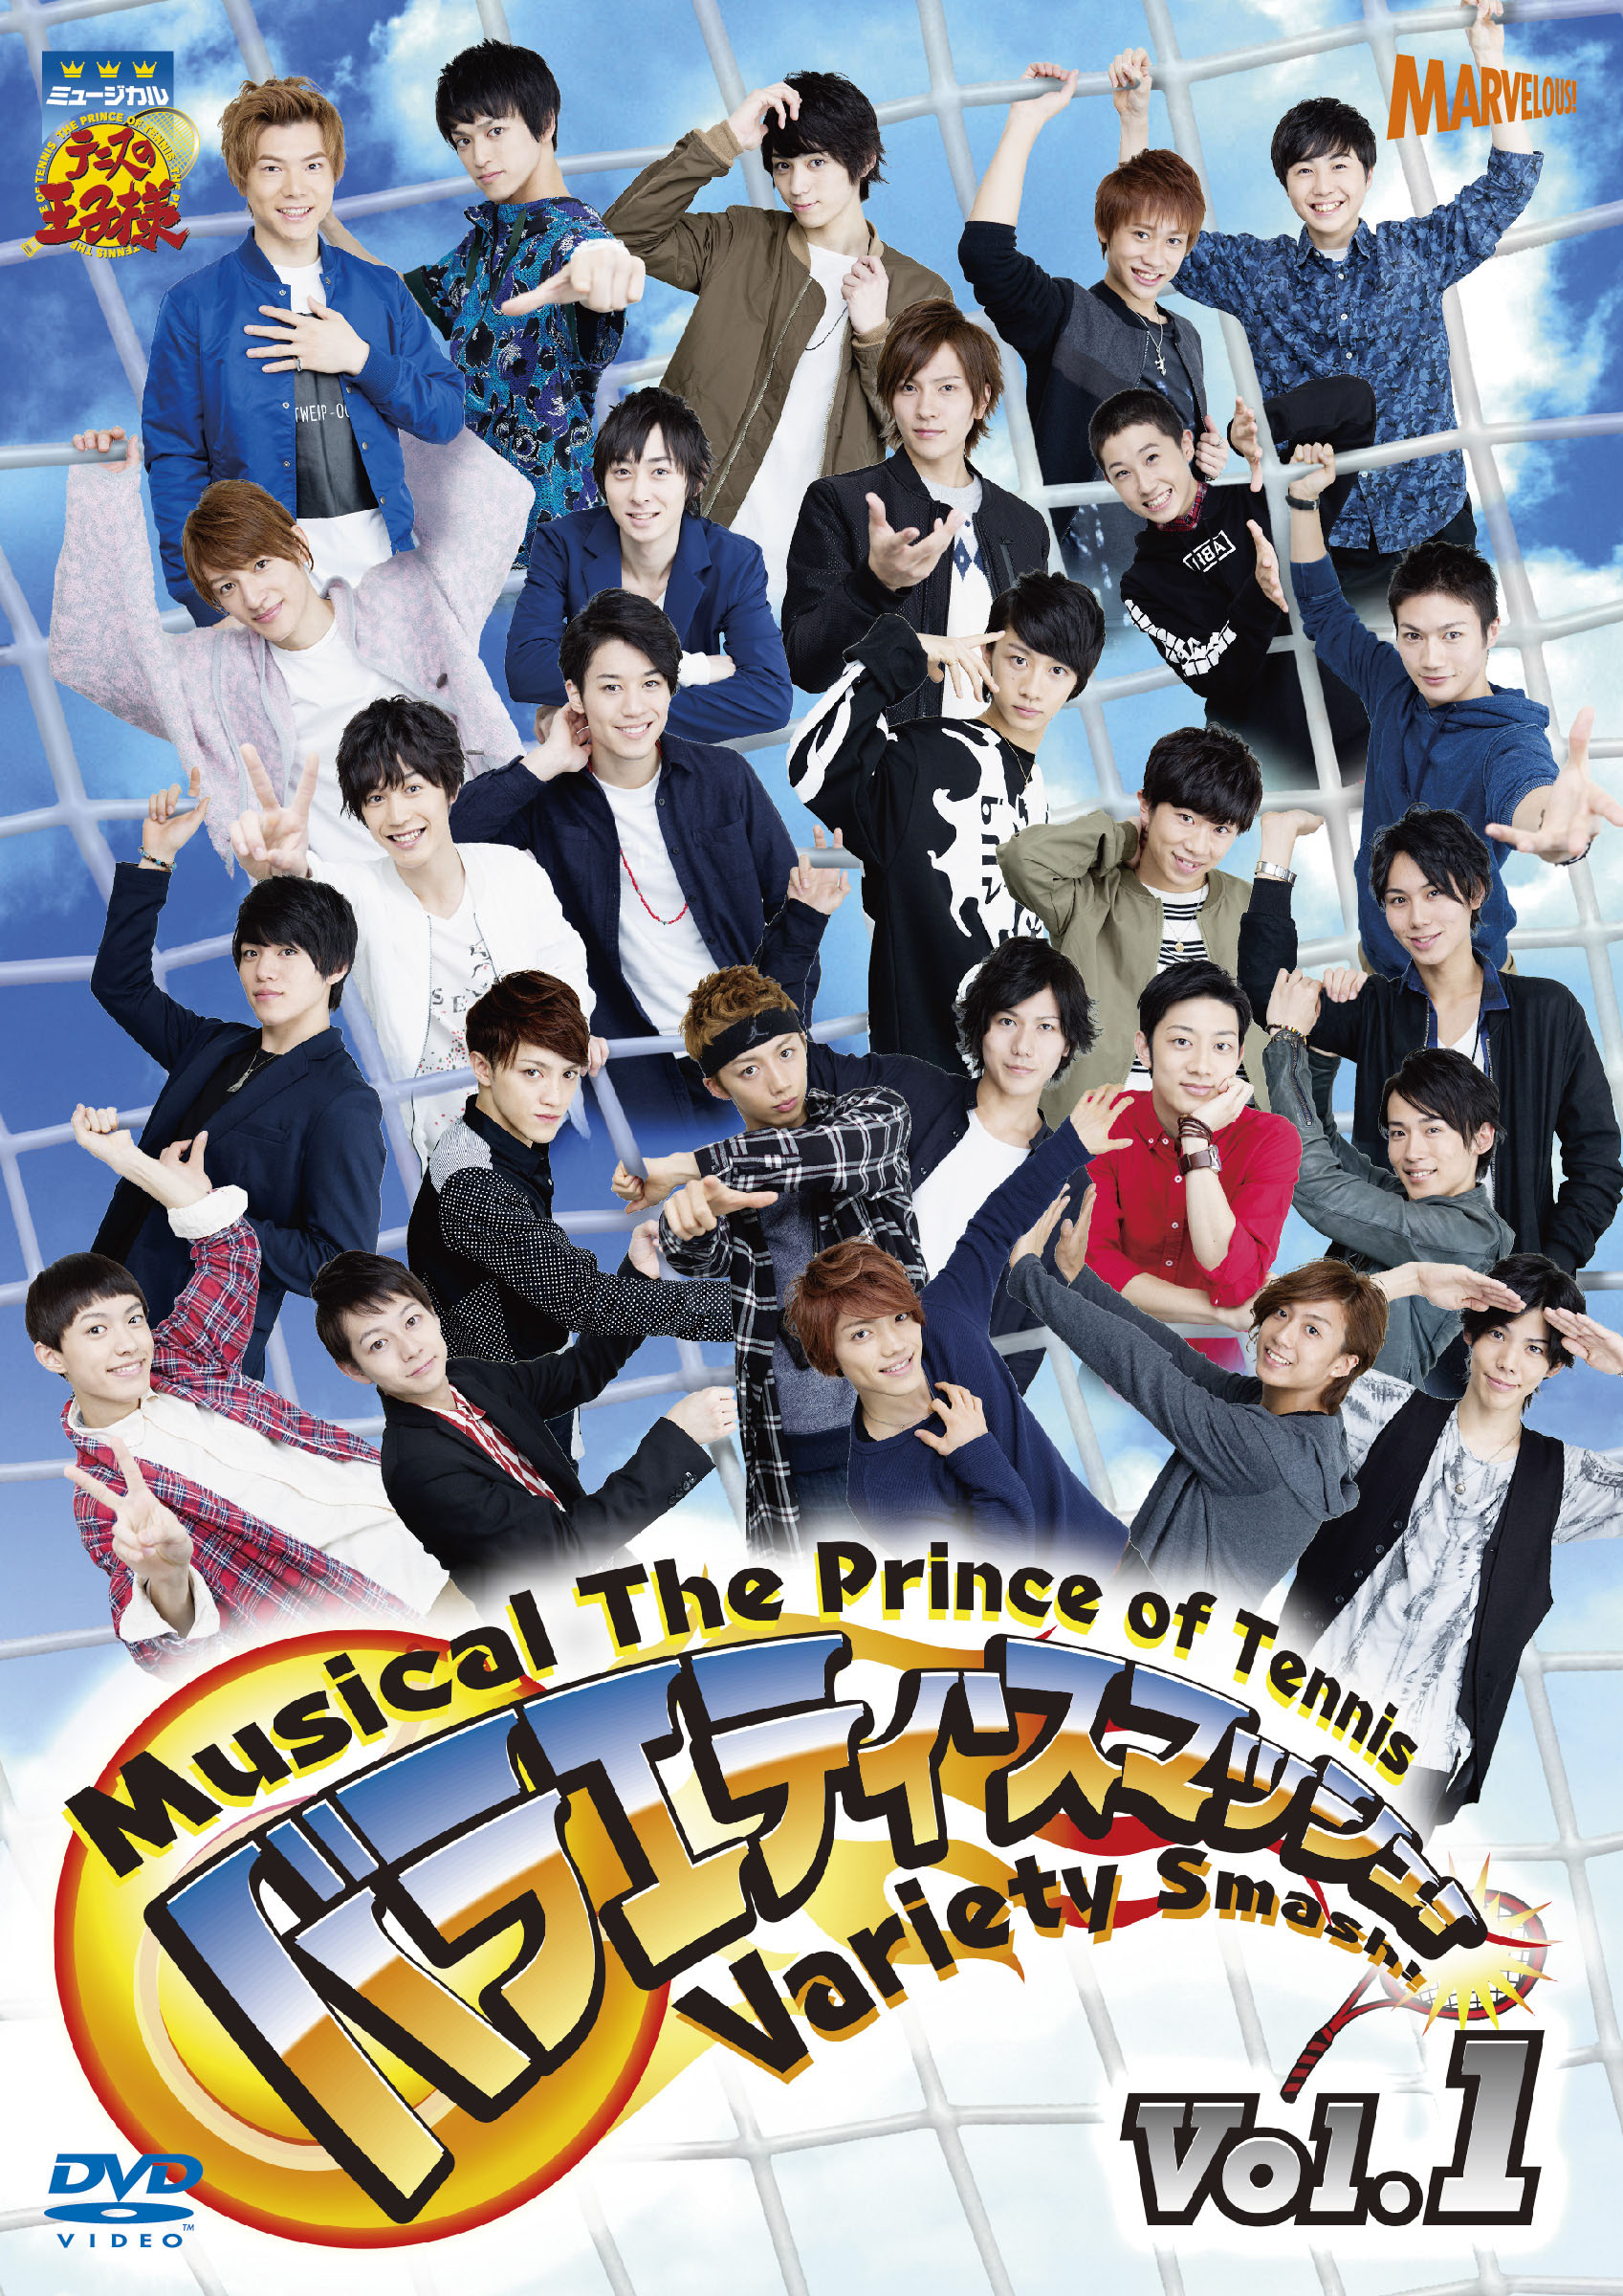 ミュージカル『テニスの王子様』 バラエティ・スマッシュ！Vol.1 DVD 